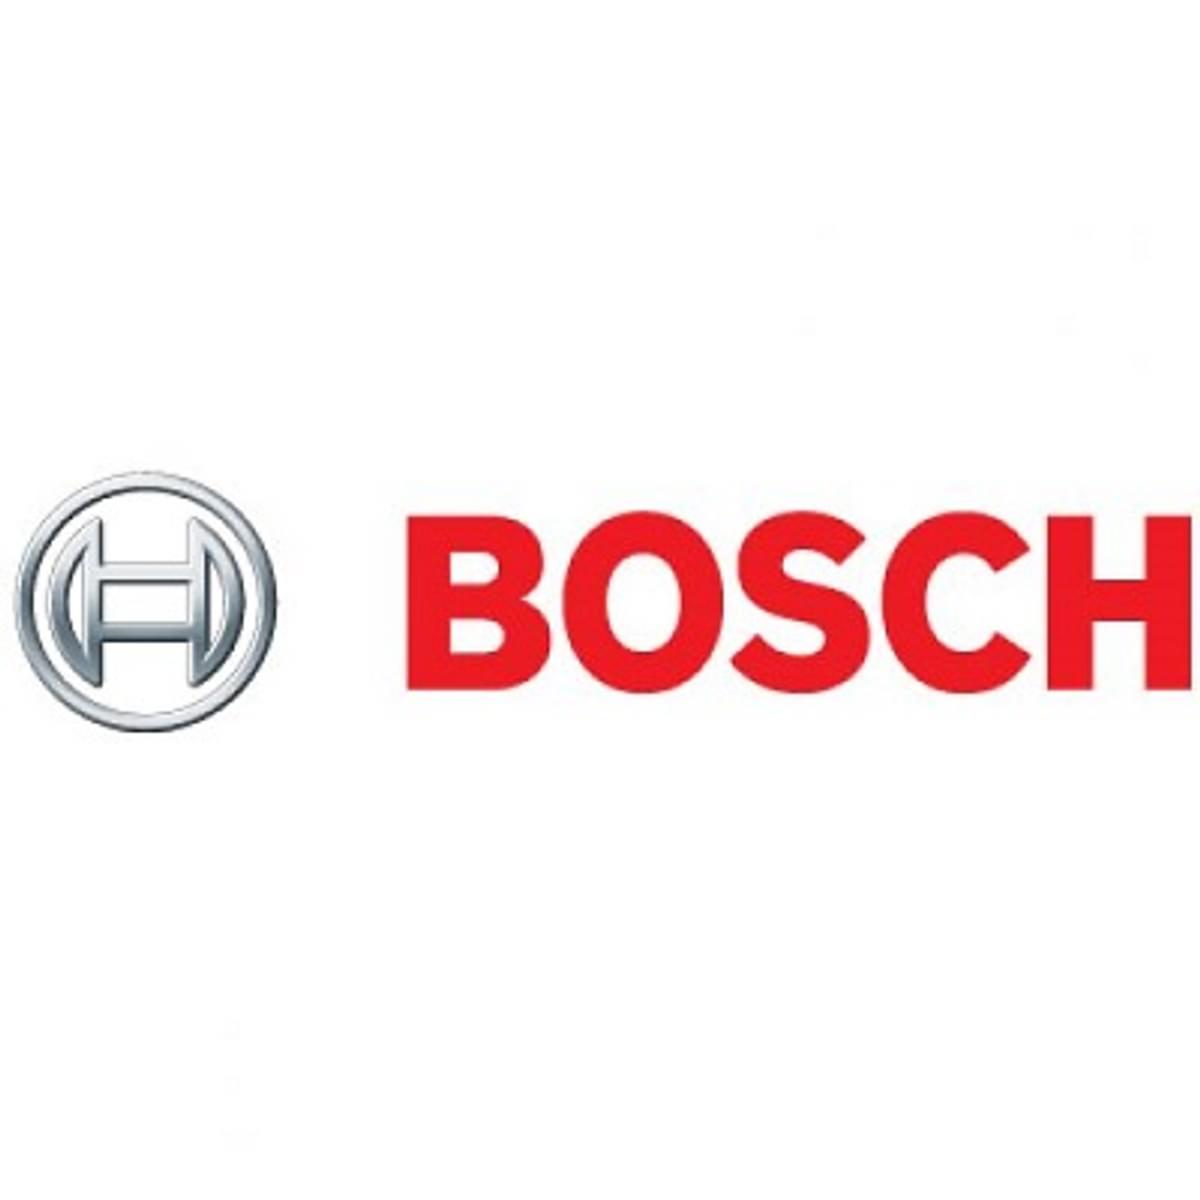 Bosch laadpaal communiceert met elektrische wagens image